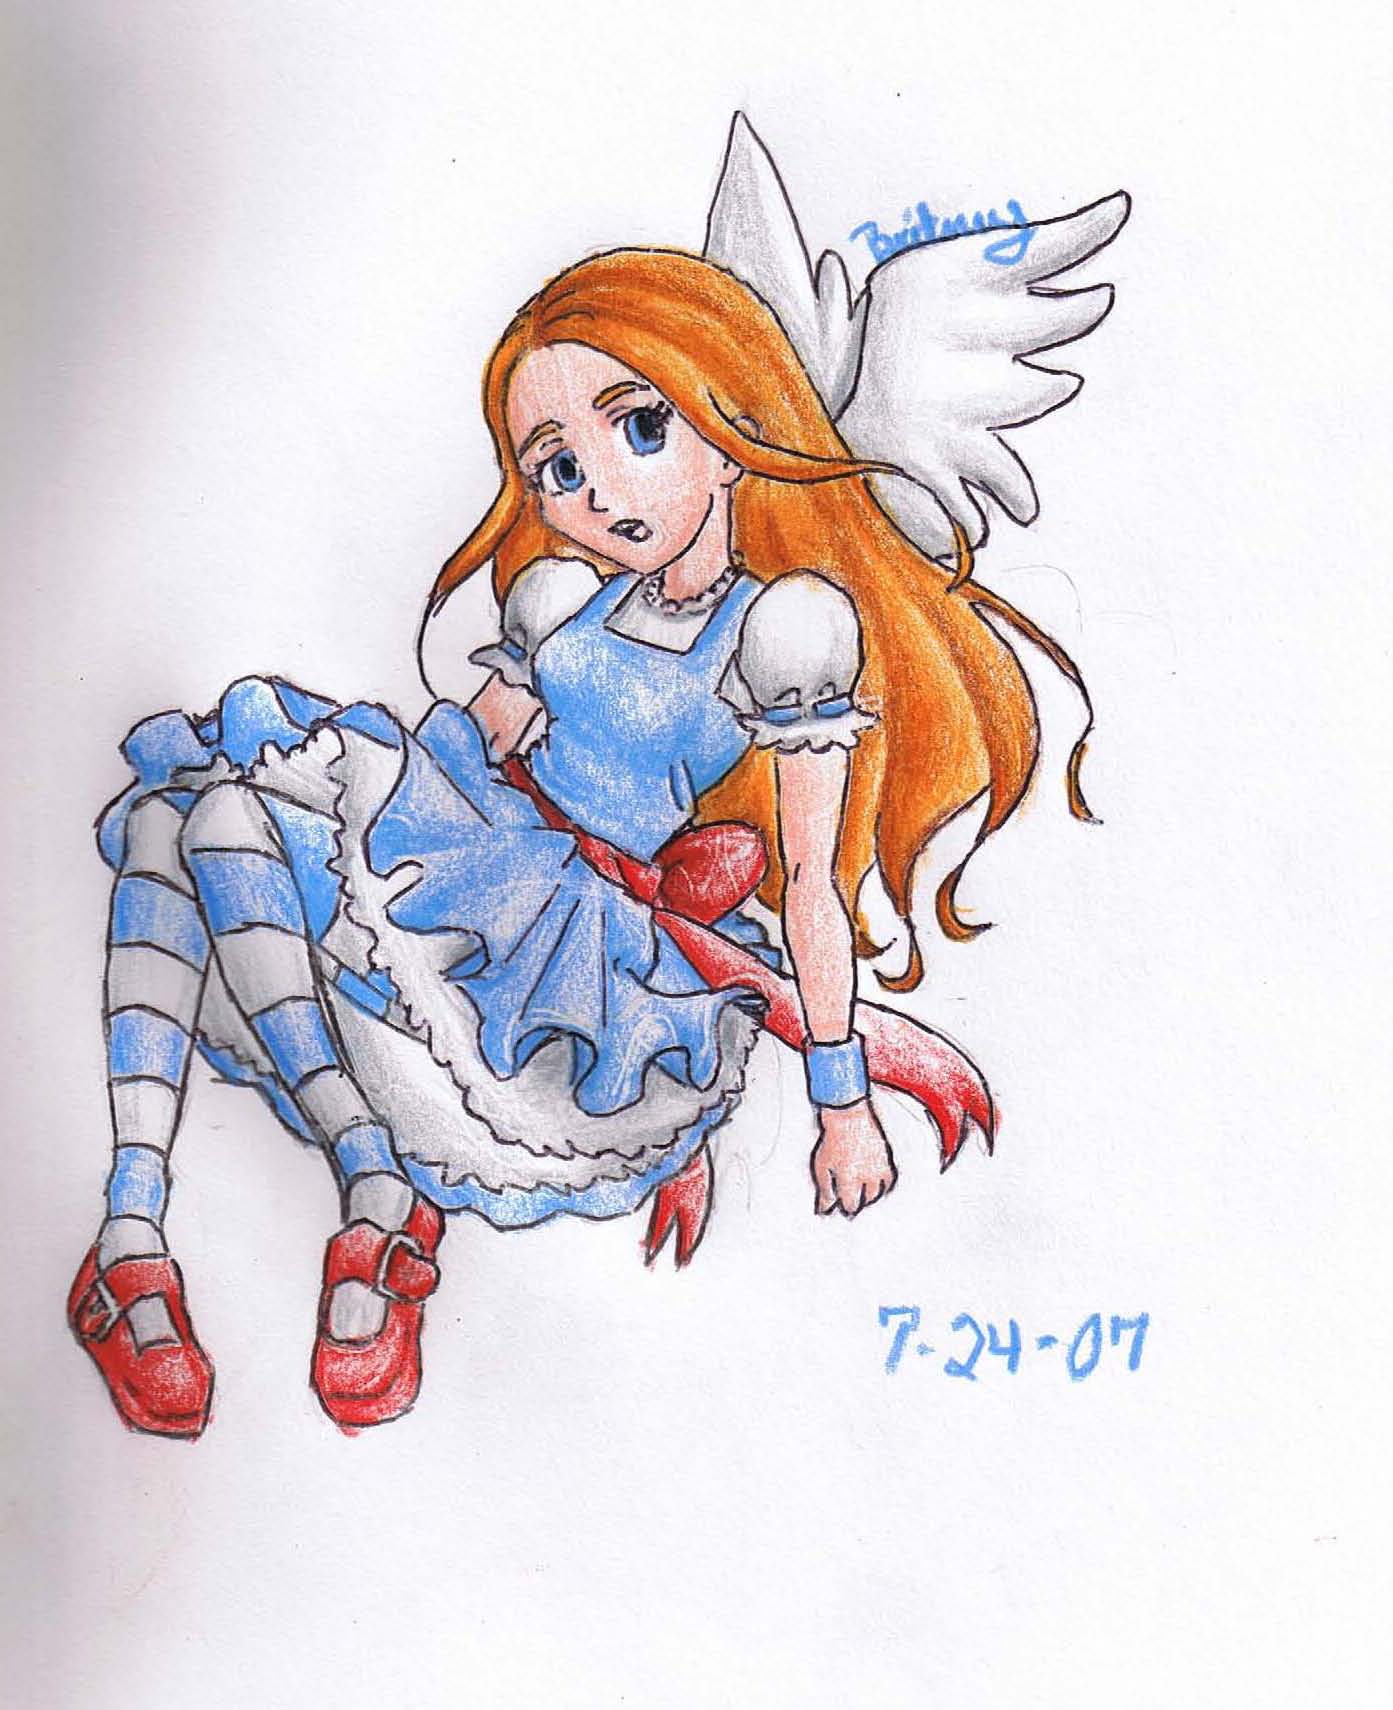 Alice by AnimatedBritney